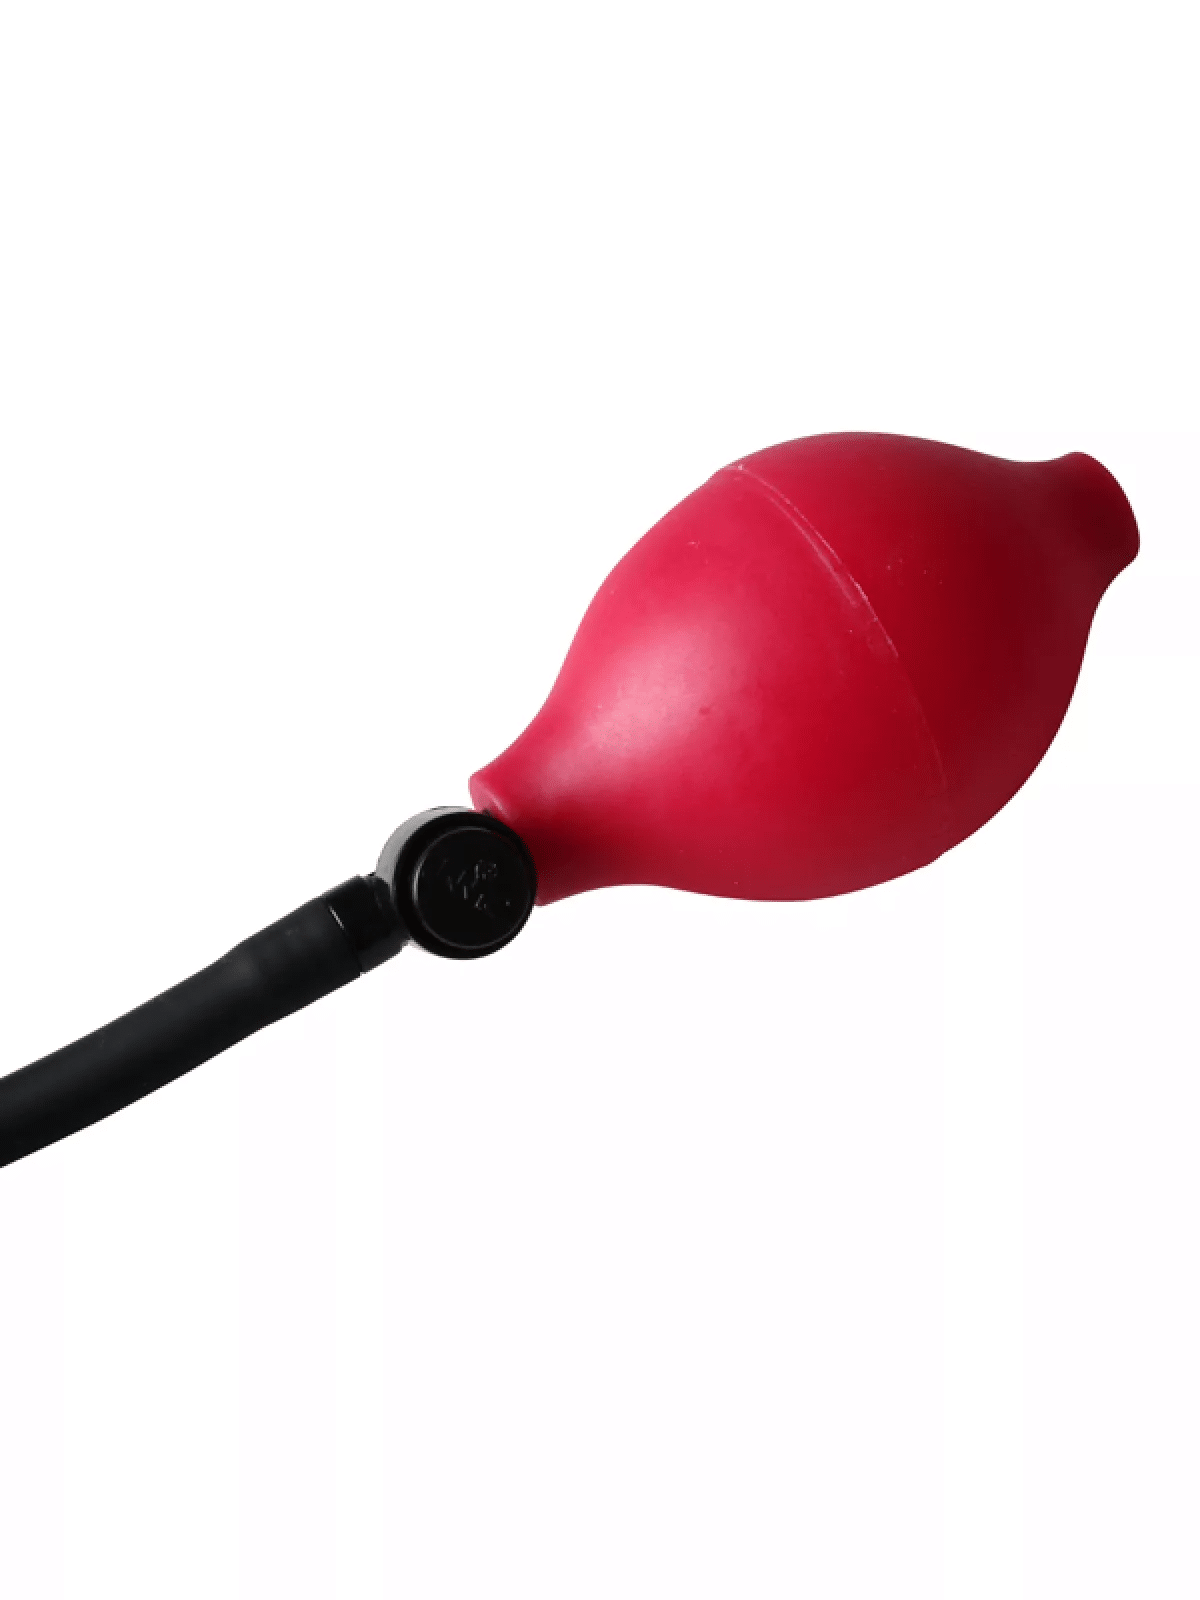 Aufblasbarer Vibrator - Red Balloon. Slide 4